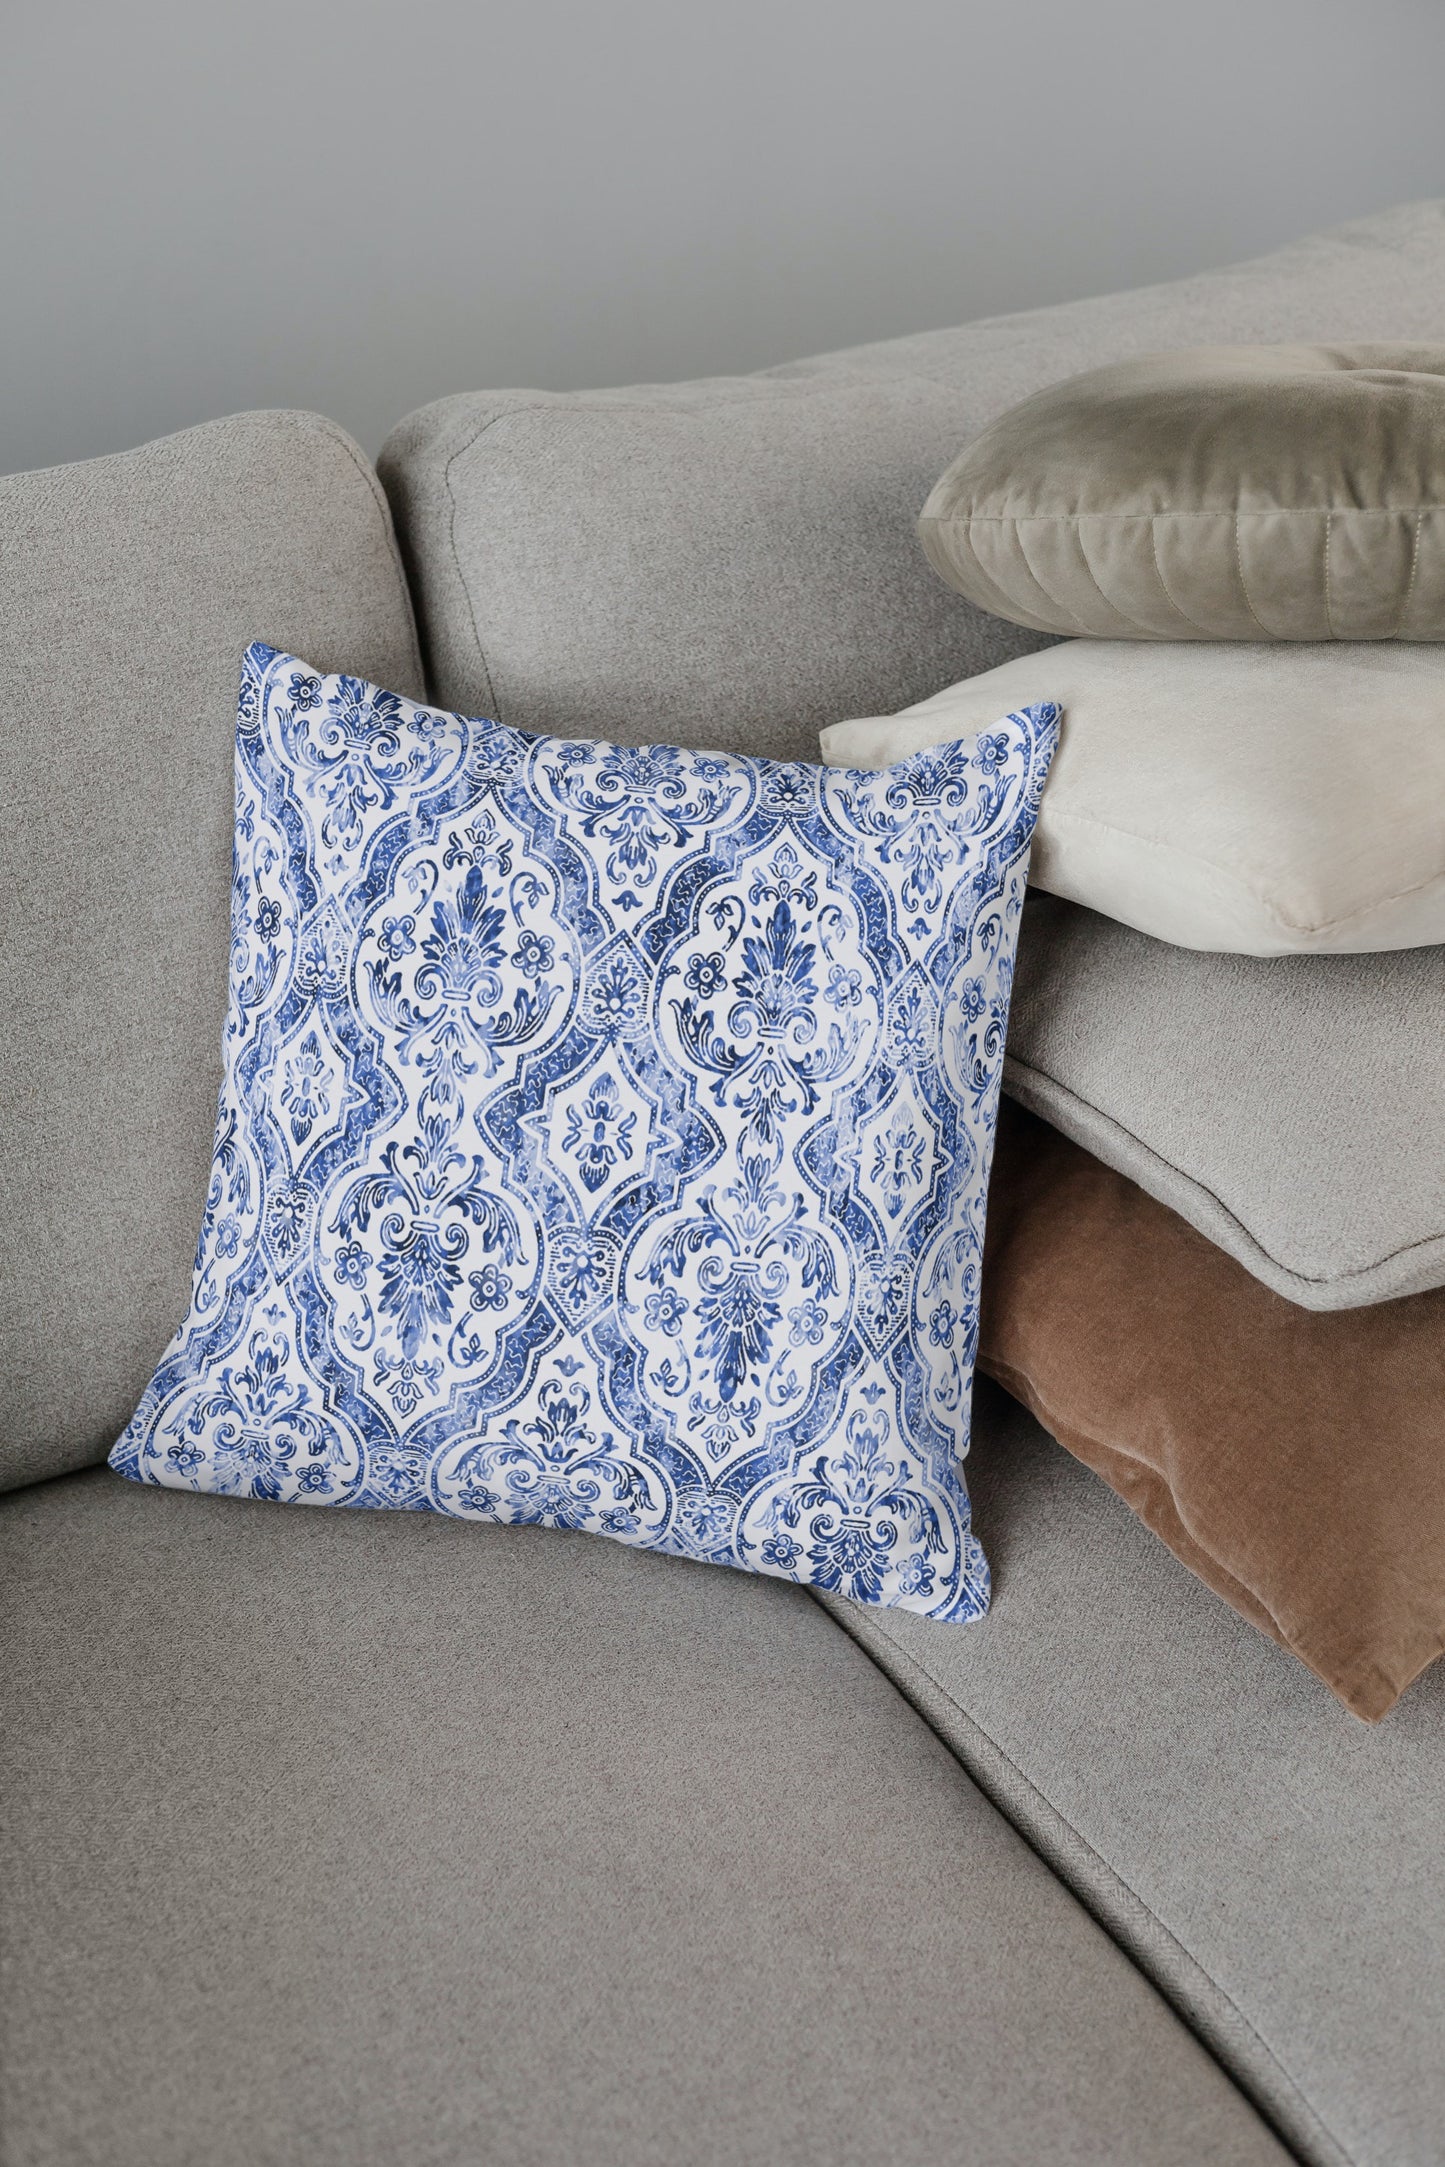 Alhambra Outdoor Pillows Blue & White